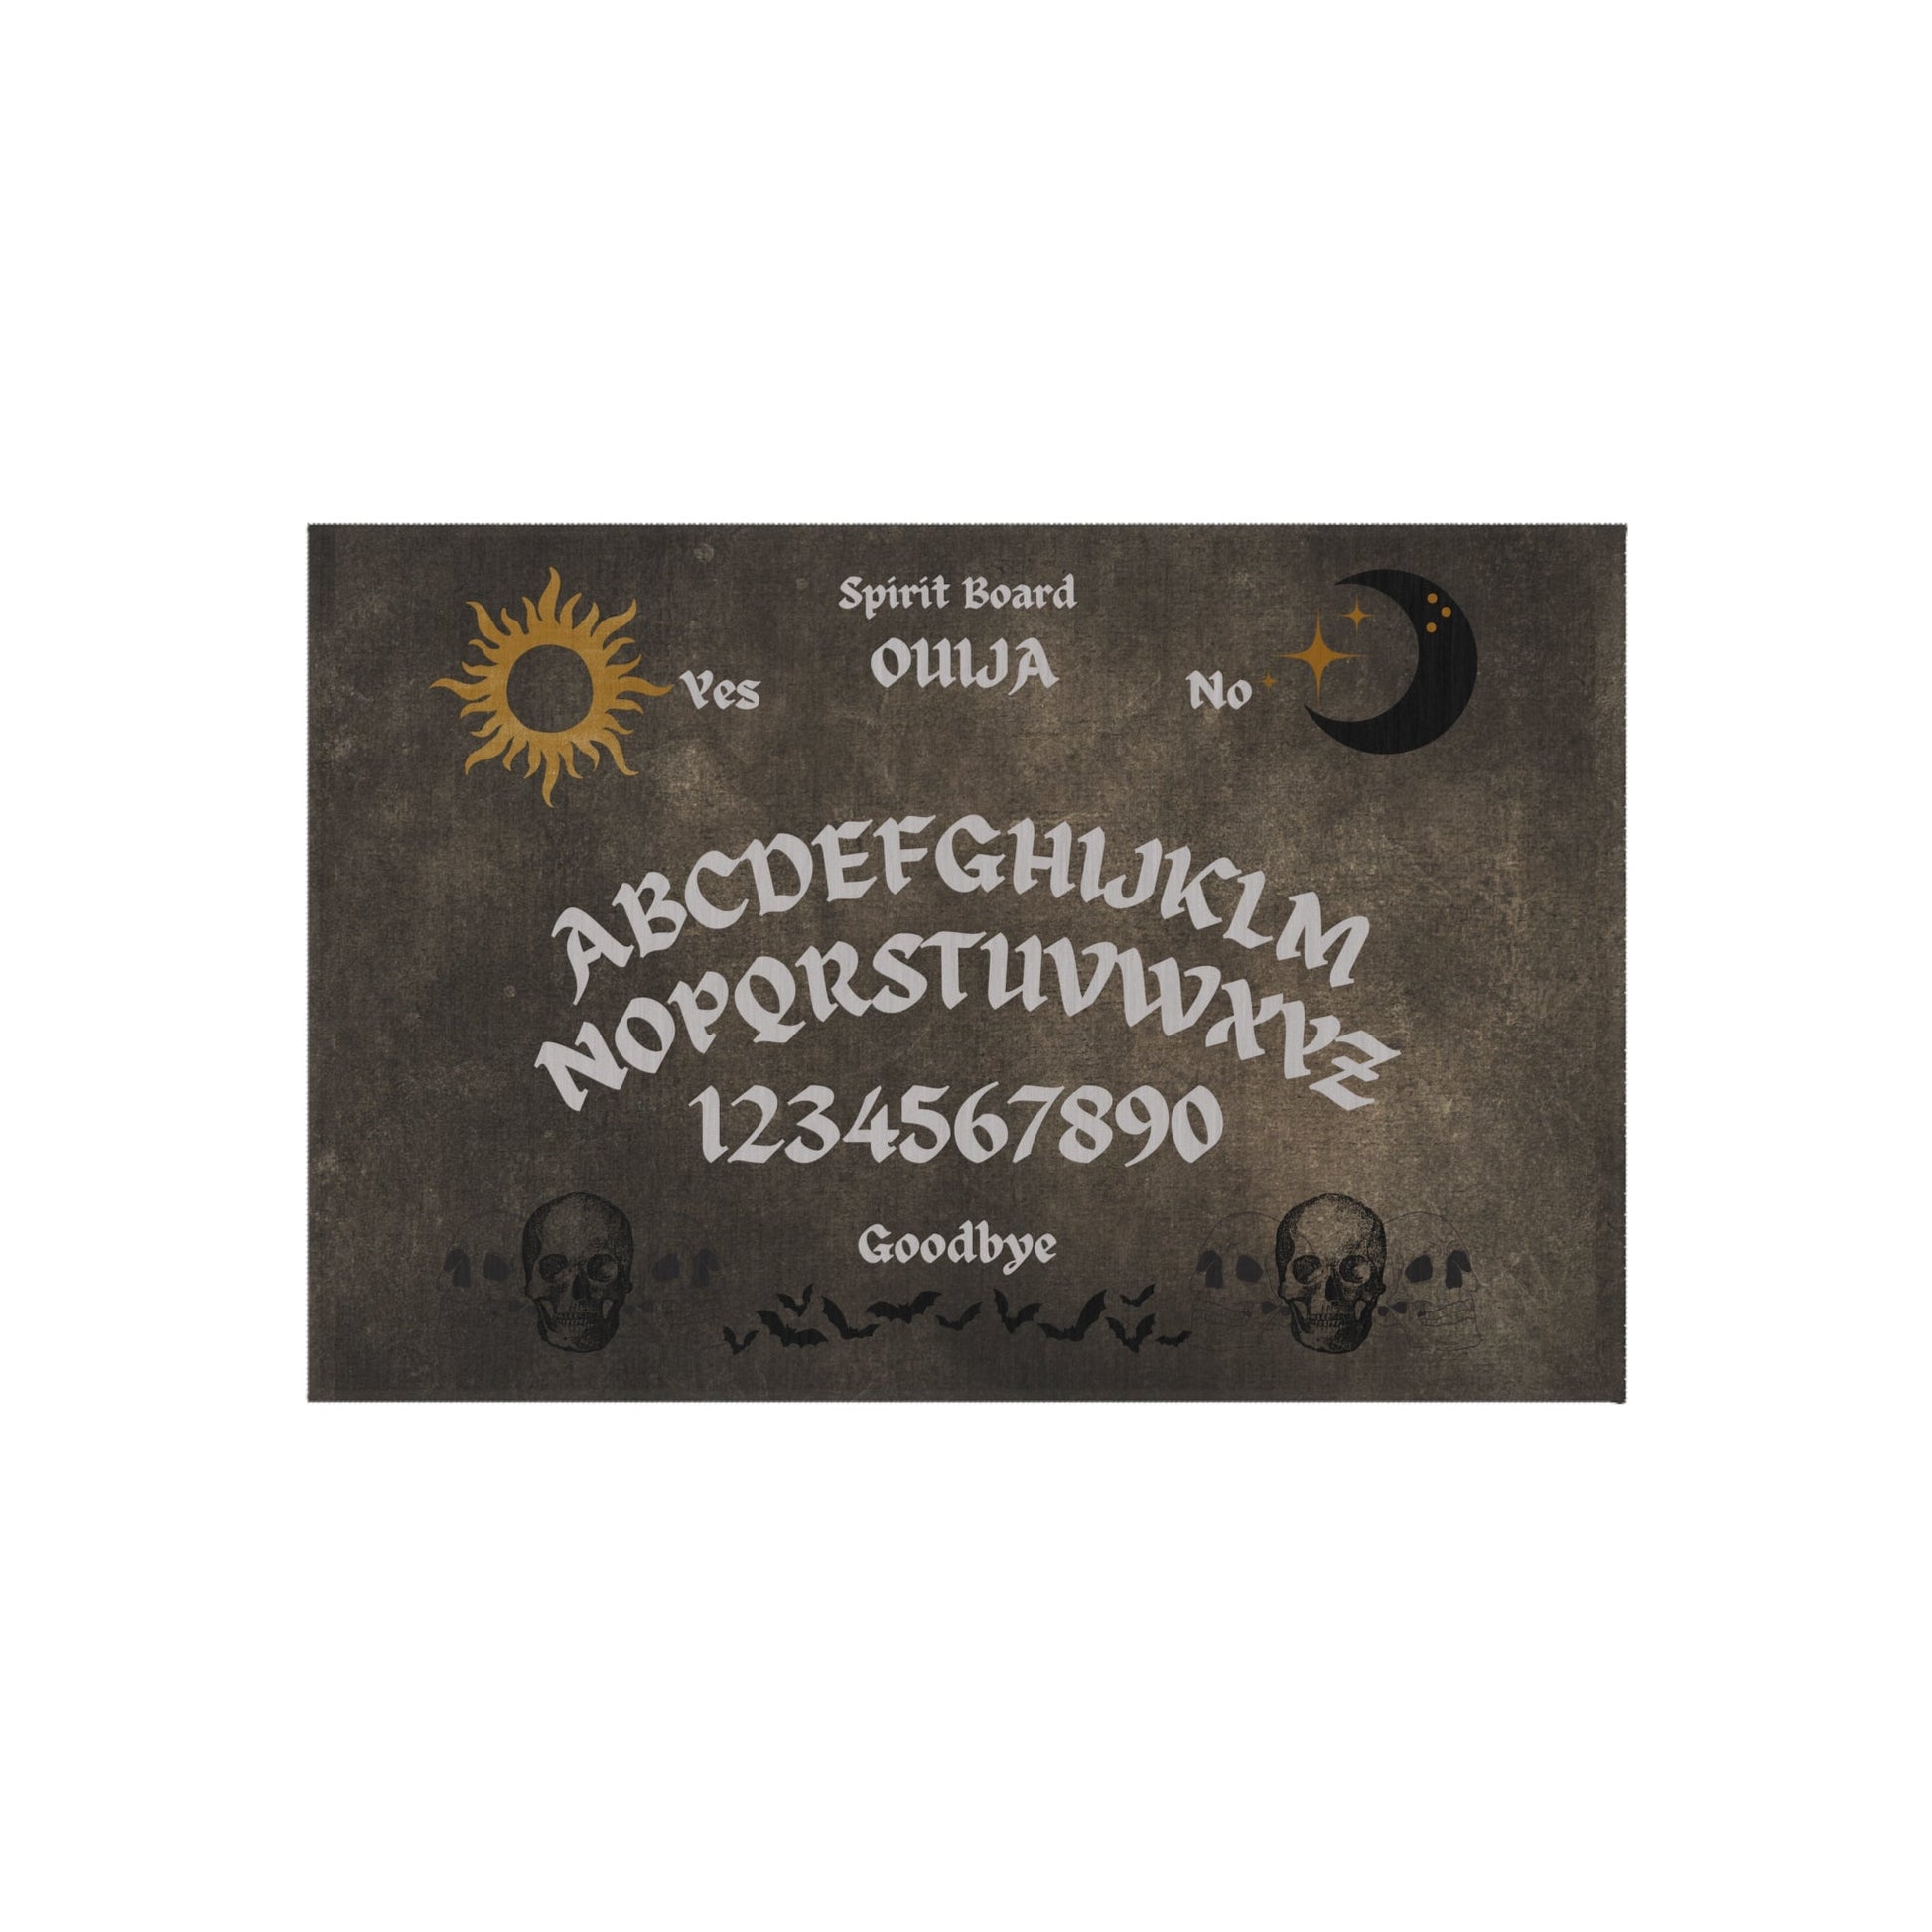 Ouija Spirit Board Outdoor Rug DoormatHome DecorVTZdesigns24" × 36"CarpetDecordoor mat